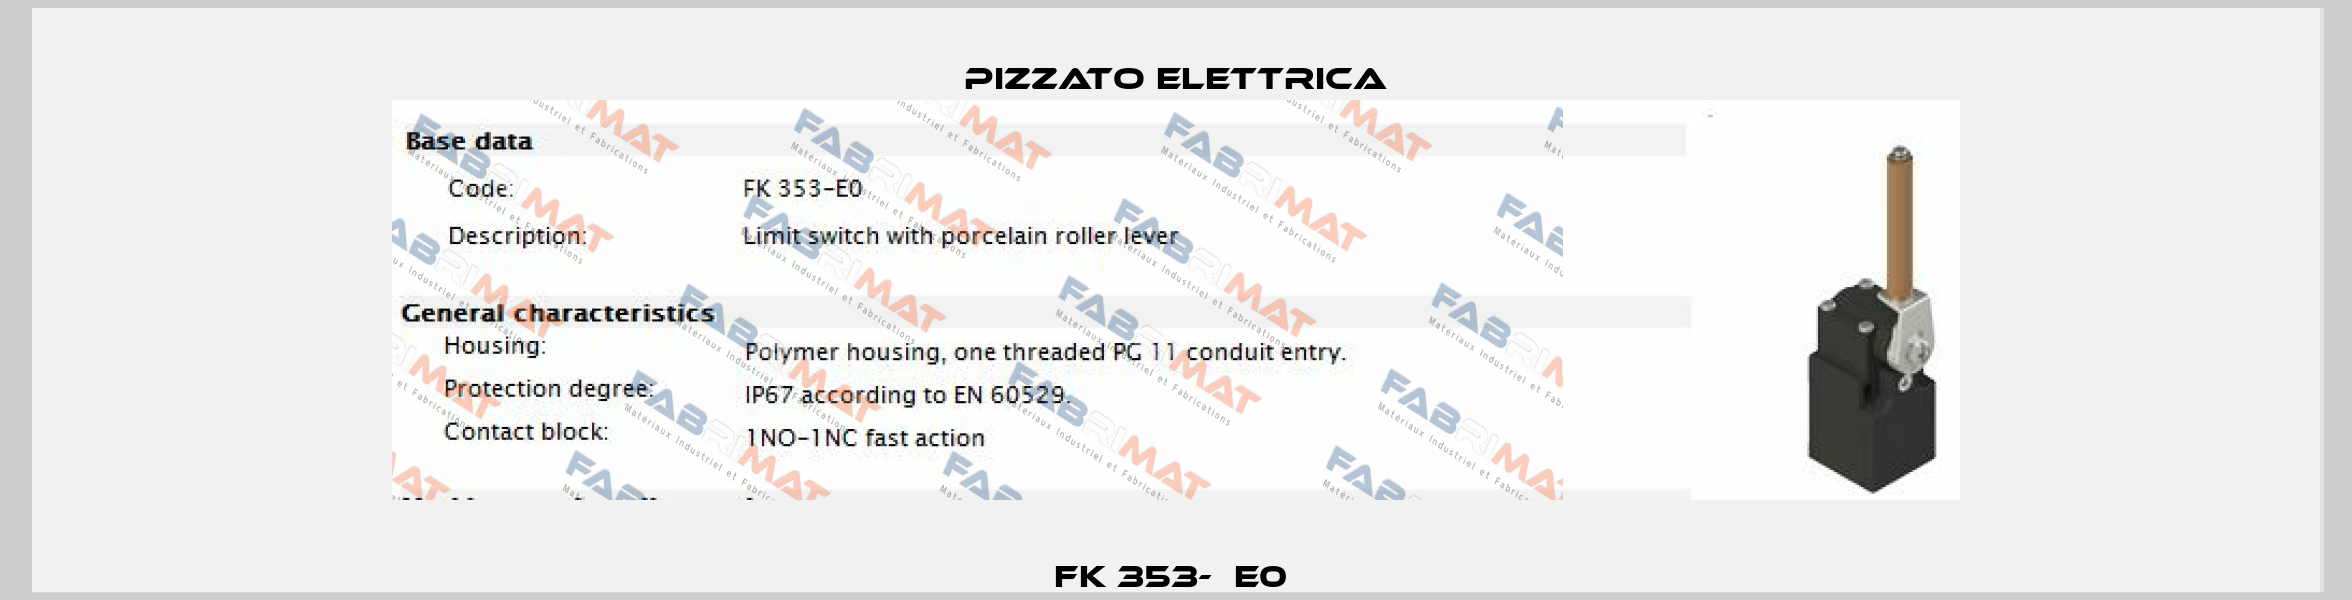 FK 353-⁠E0  Pizzato Elettrica